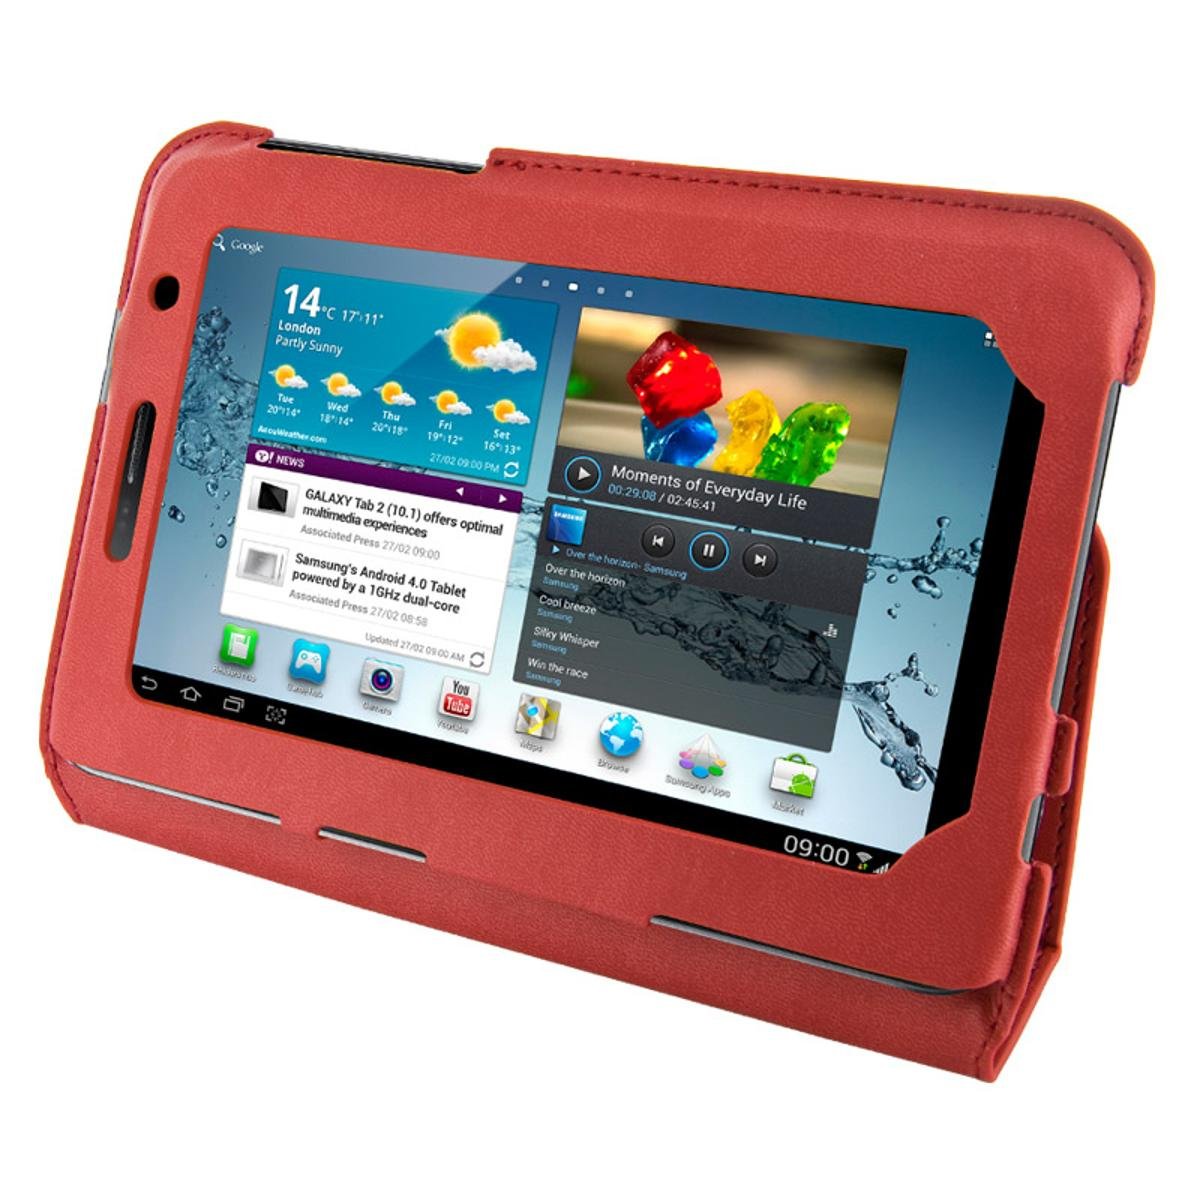 4World Etui - stand dla Galaxy Tab 2. Ultra Slim. 7. czerwony (9125)